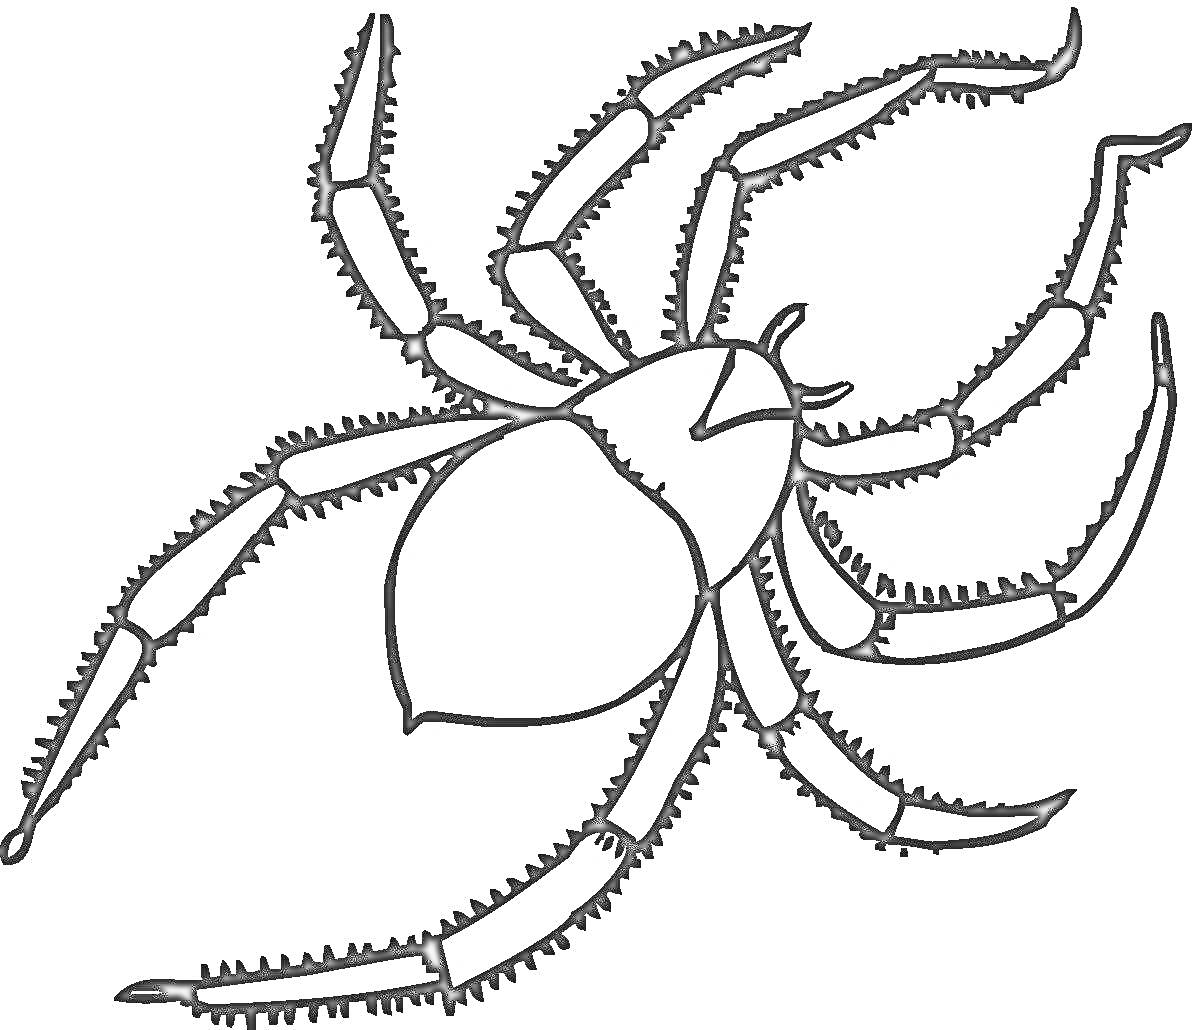 Раскраска паука с восемью ногами и телом, схемный рисунок для детей